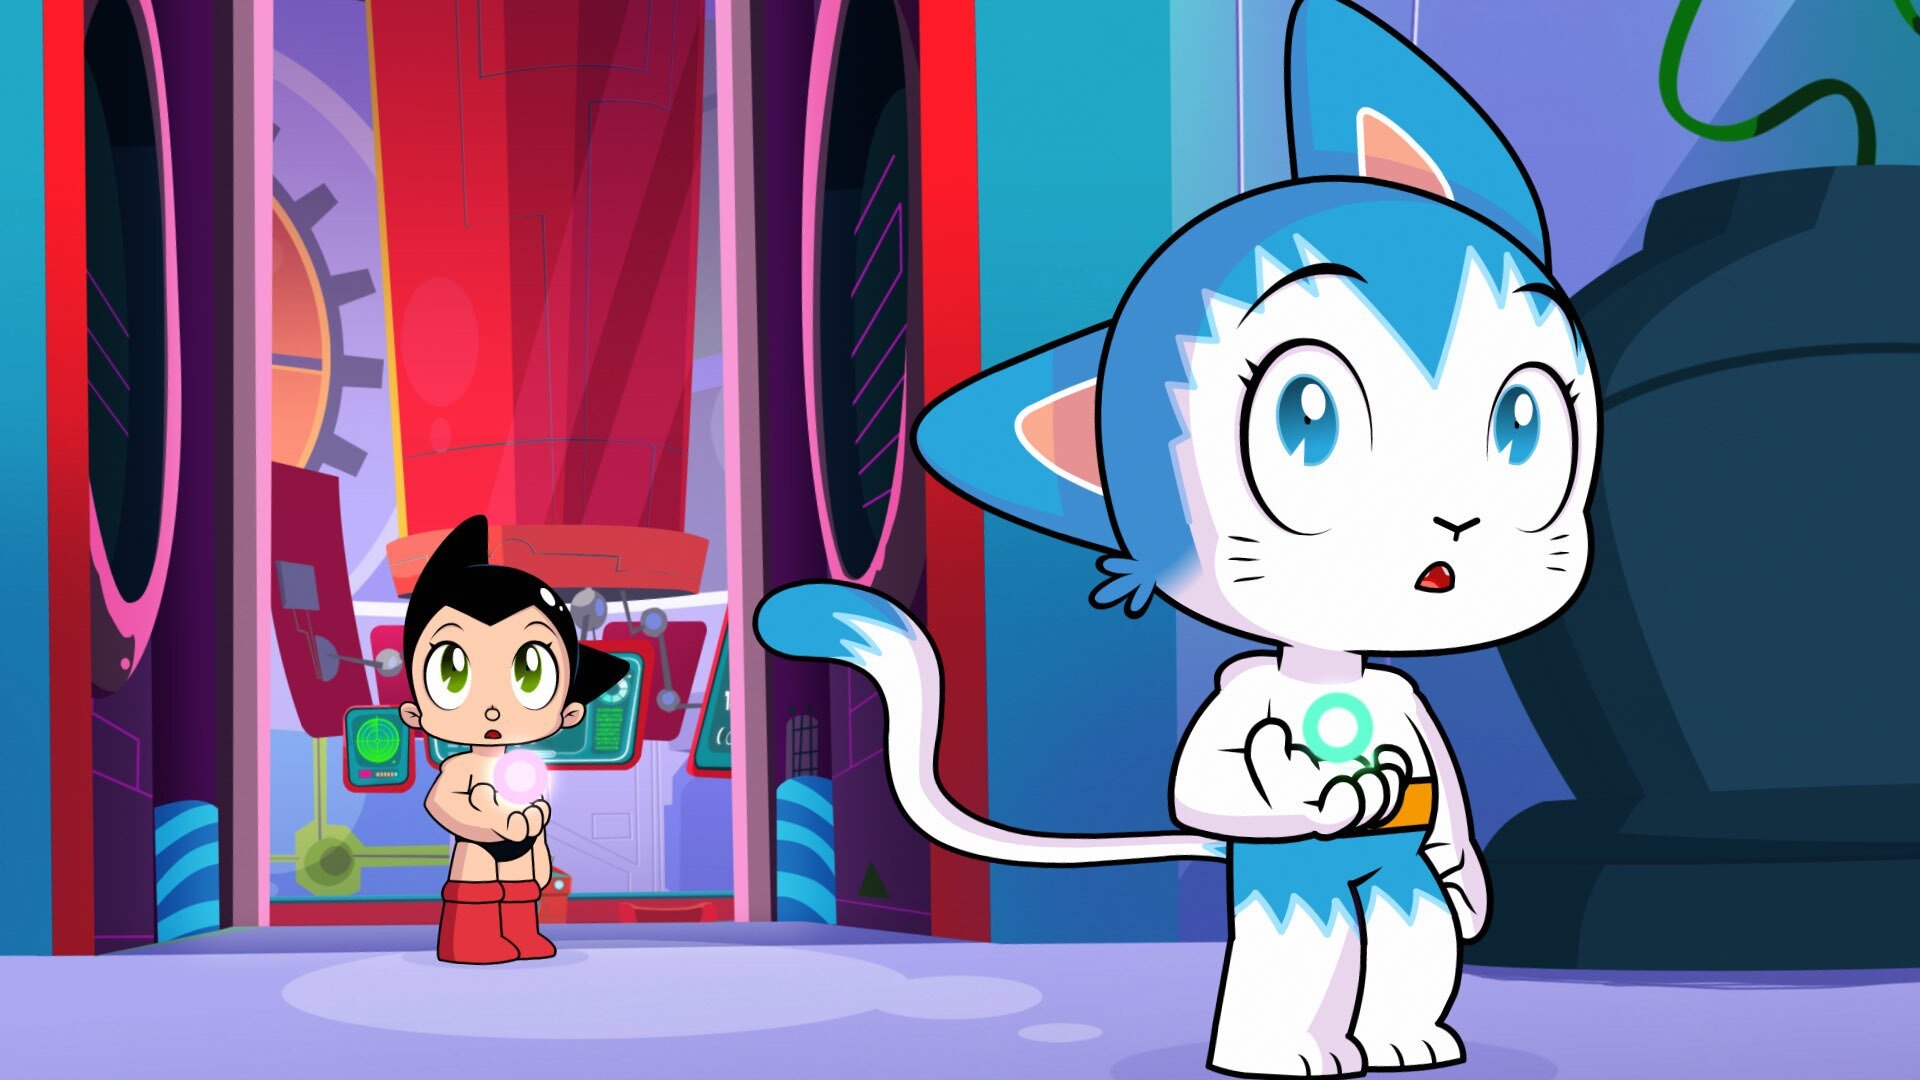 Watch Go Astro Boy Go Online Stream Full Episodes